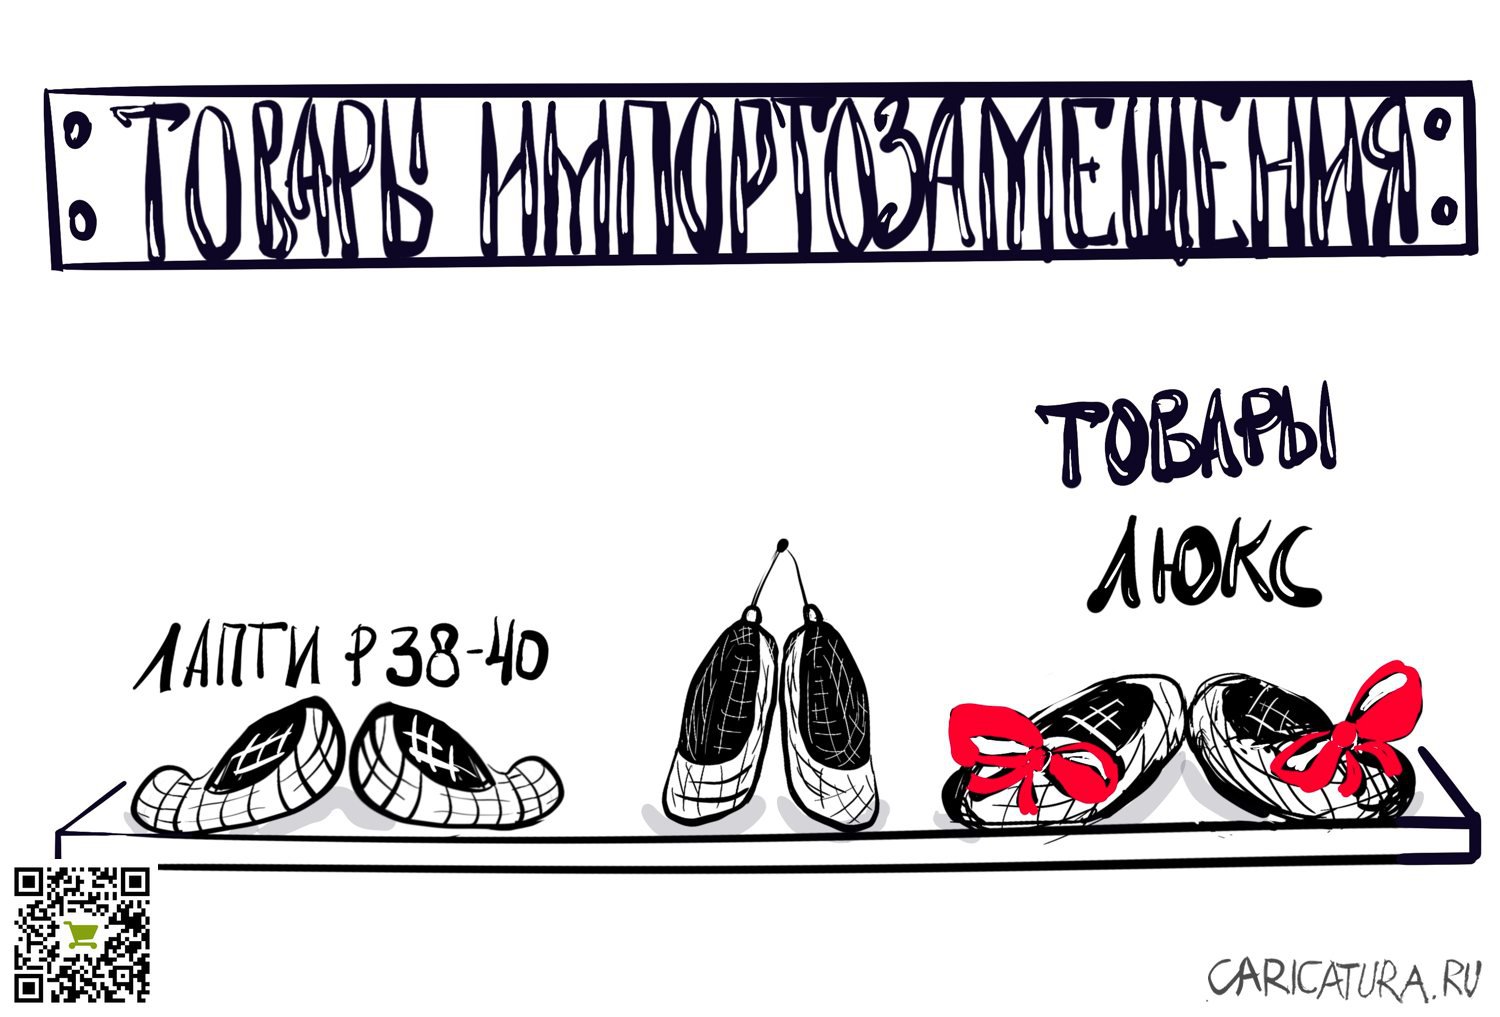 Карикатура "Товары народного потребления", Мария Берг